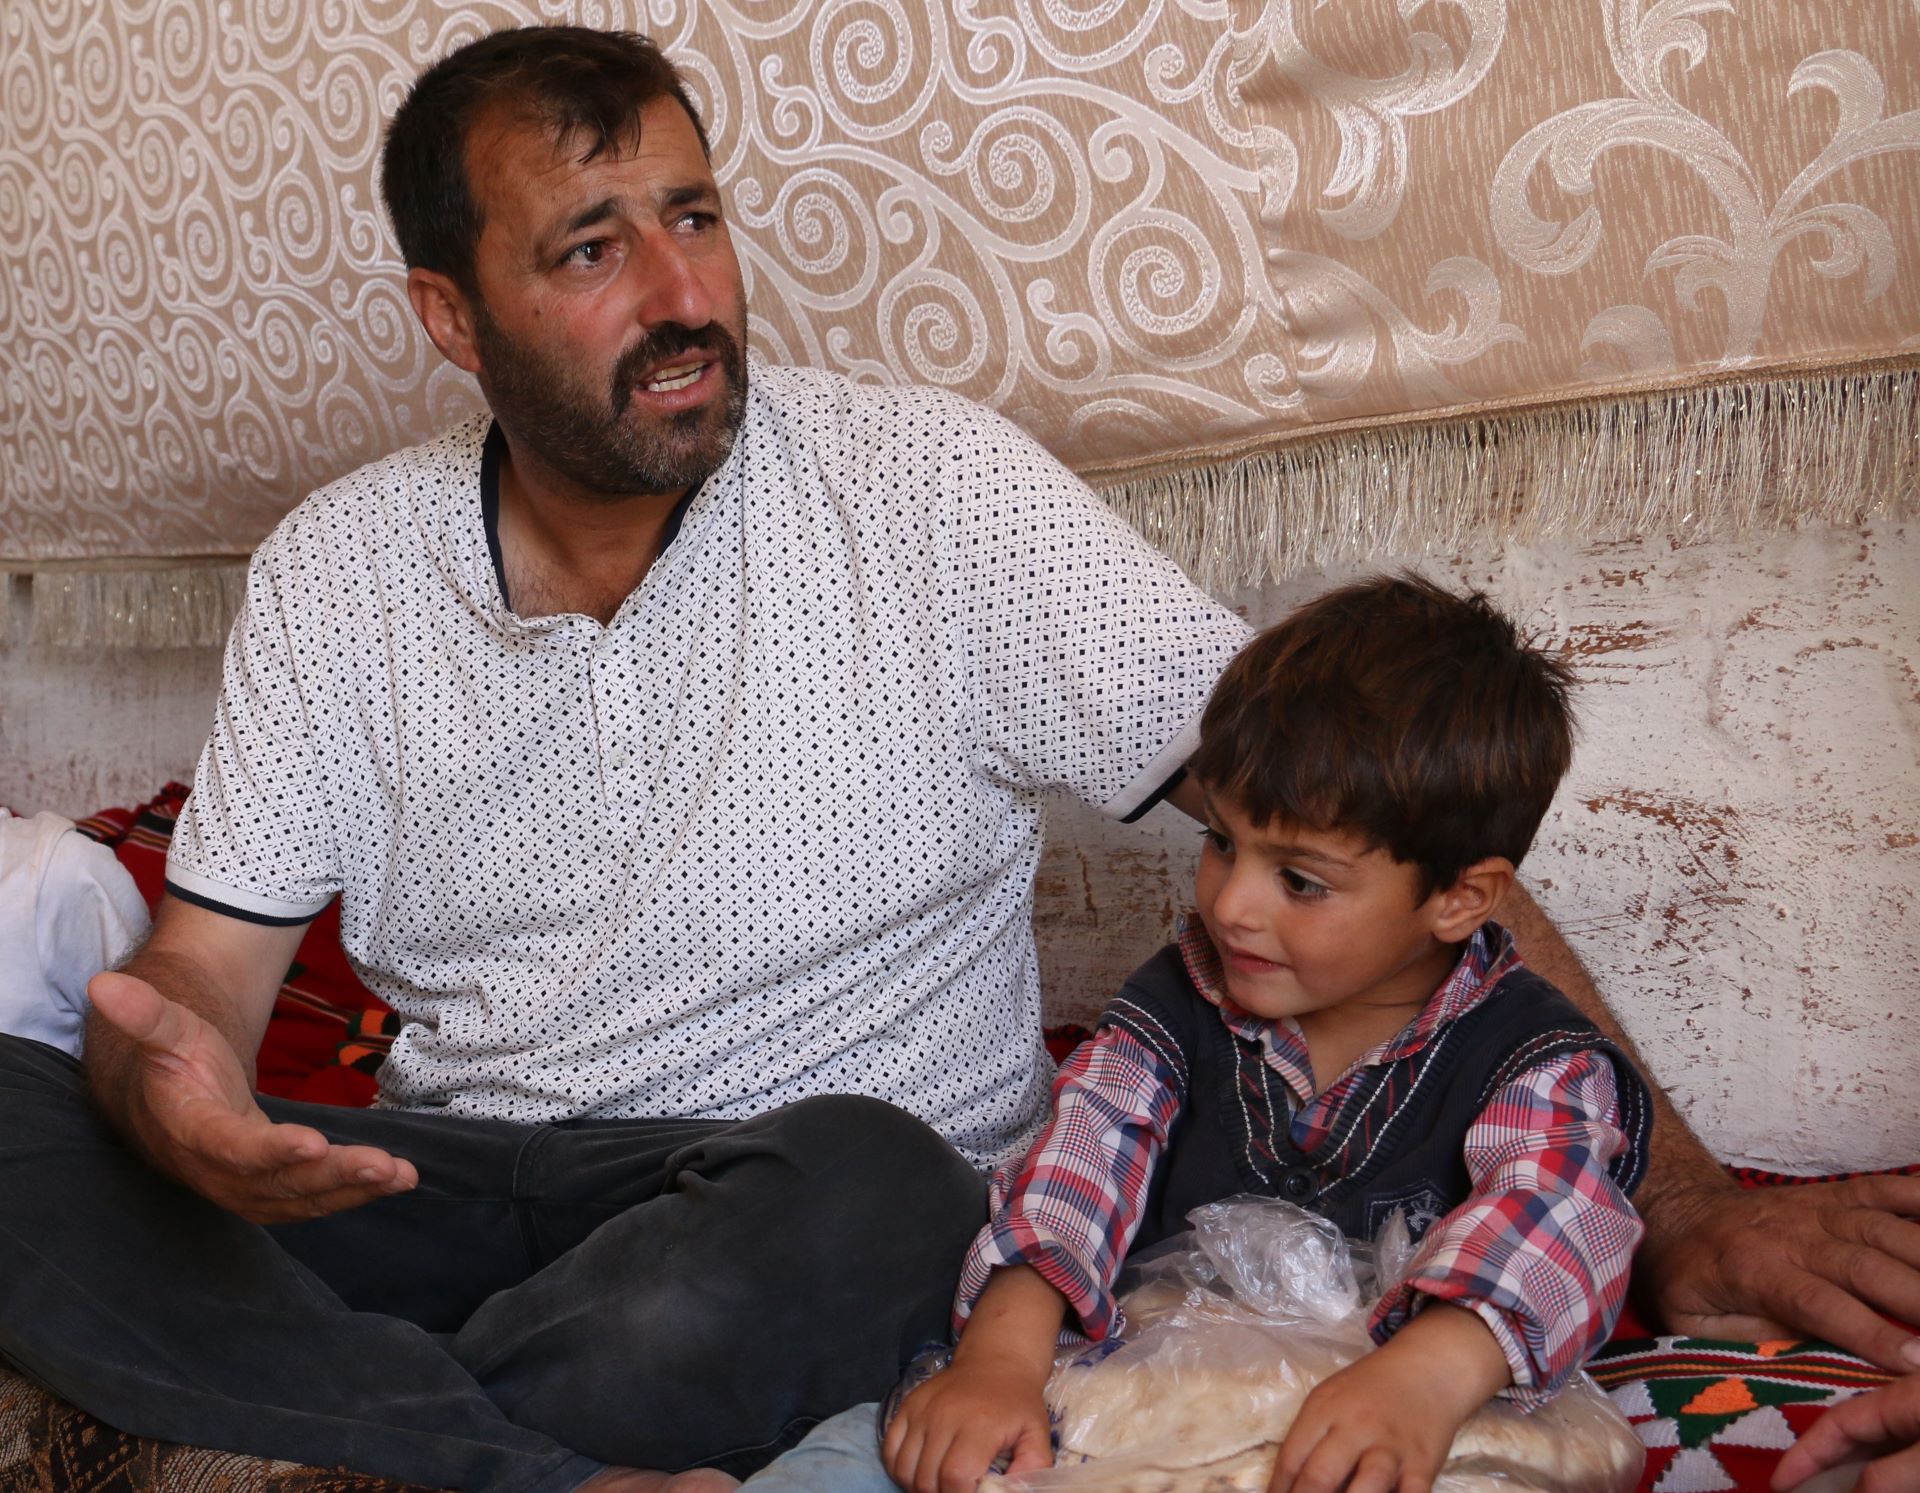 Das Bild zeigt Ahmed Hassan mit einem seiner Söhne. Das Kind ist ungefähr 4 Jahre alt und hält eine Tüte mit Brot in den Händen.